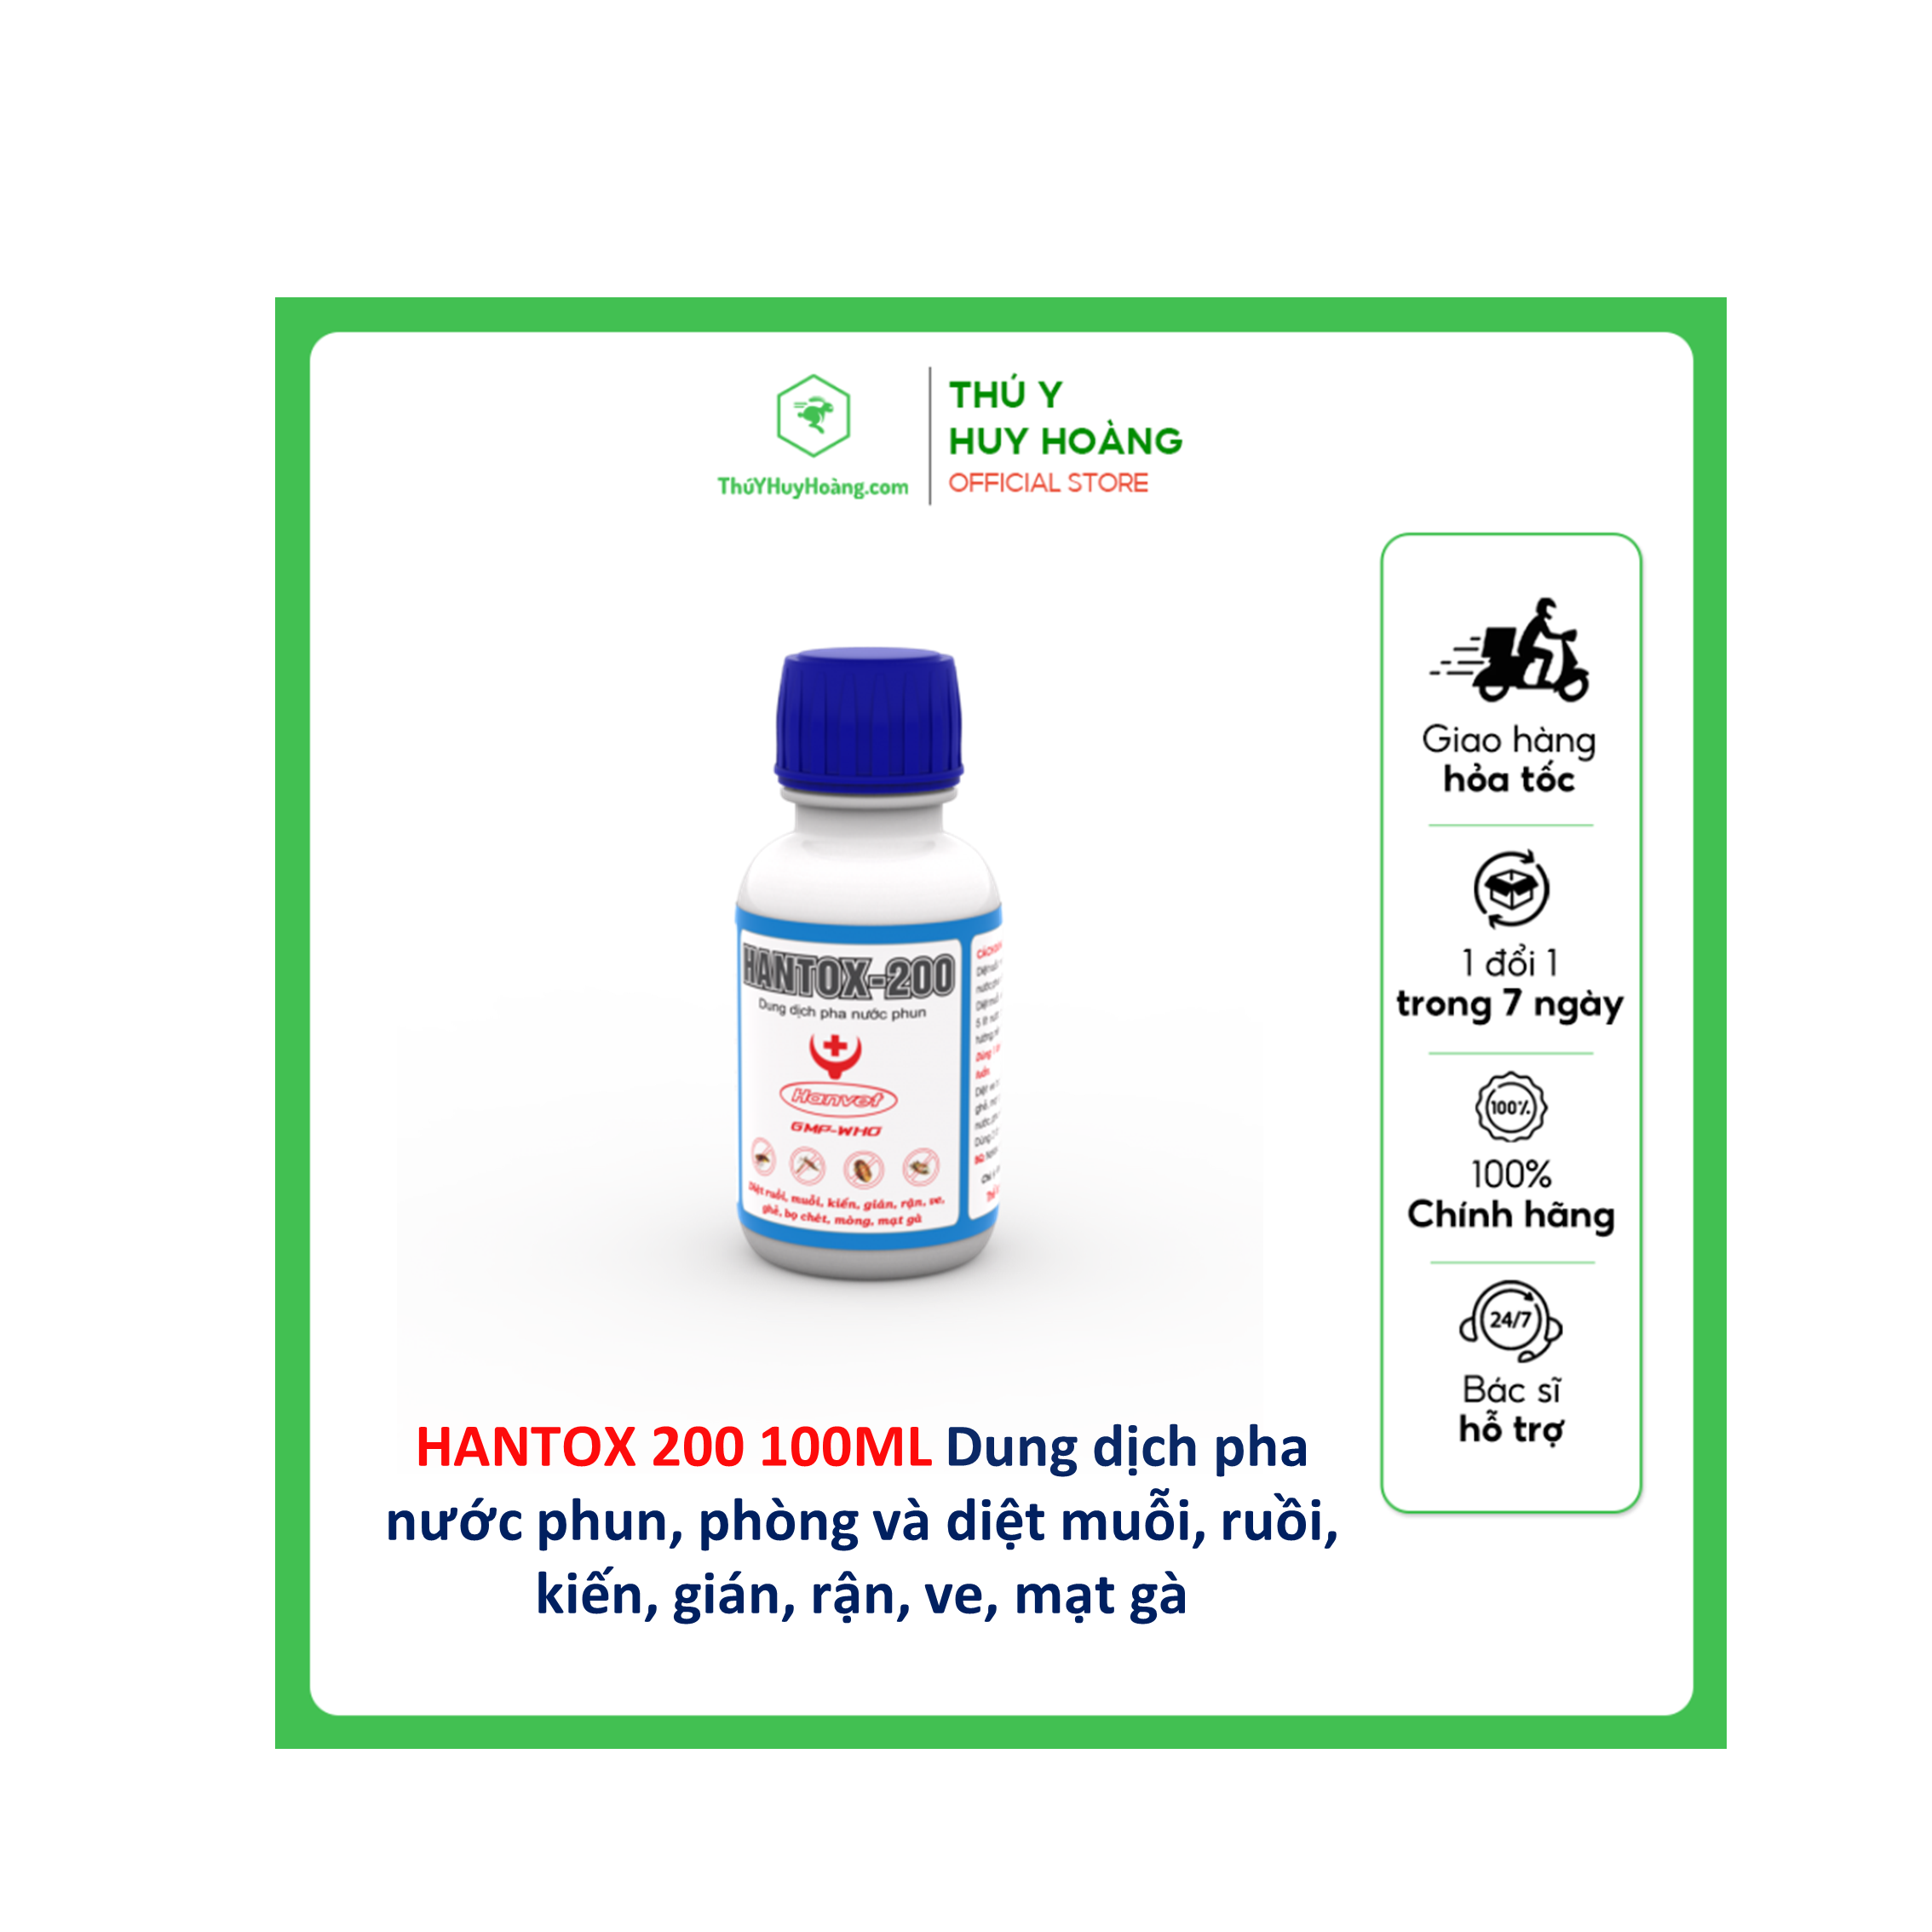 HANTOX 200 100ML Dung dịch pha nước phun, phòng và diệt muỗi, ruồi, kiến, gián, rận, ve, mạt gà